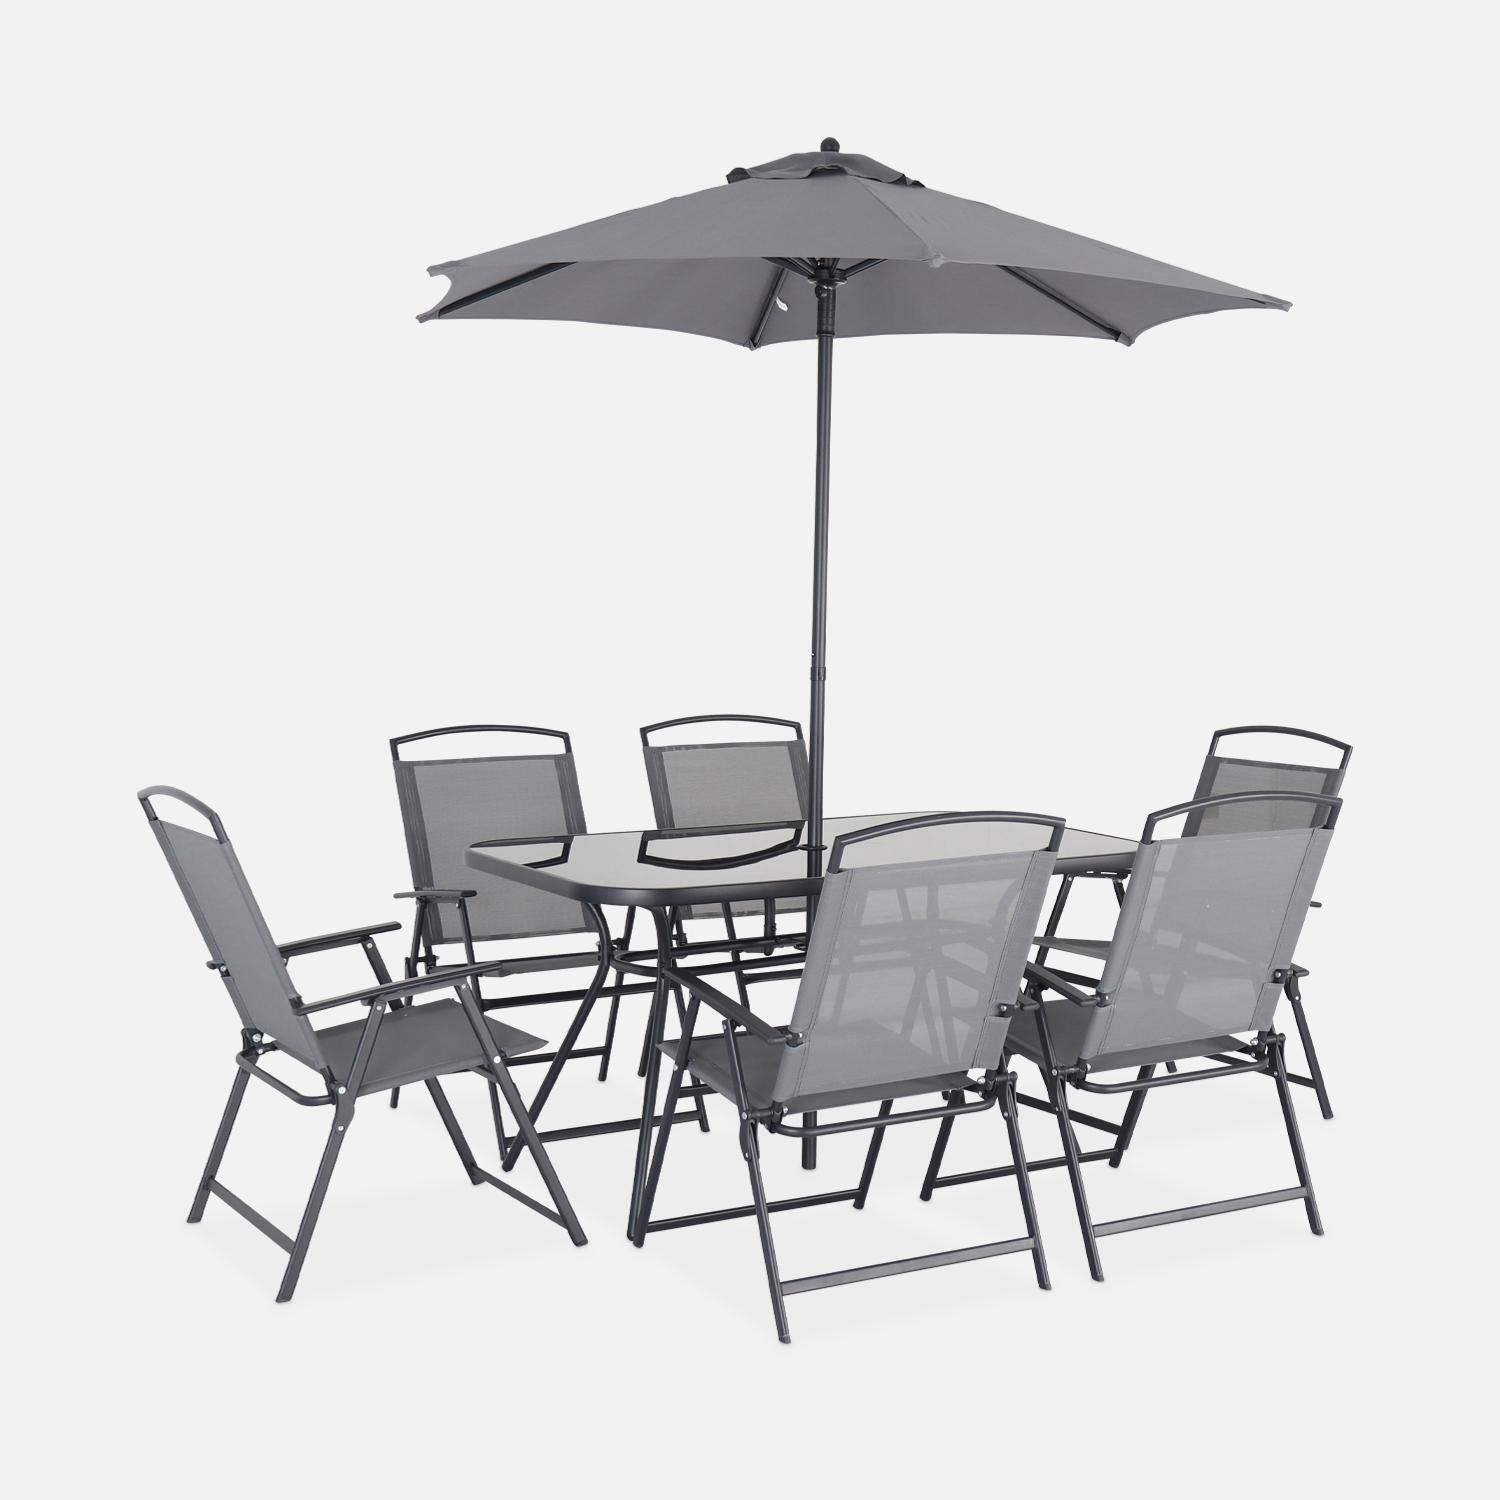 Table de jardin avec 6 fauteuils pliants gris et un parasol 2m, anthracite, structure acier avec revêtement anti rouille,sweeek,Photo3